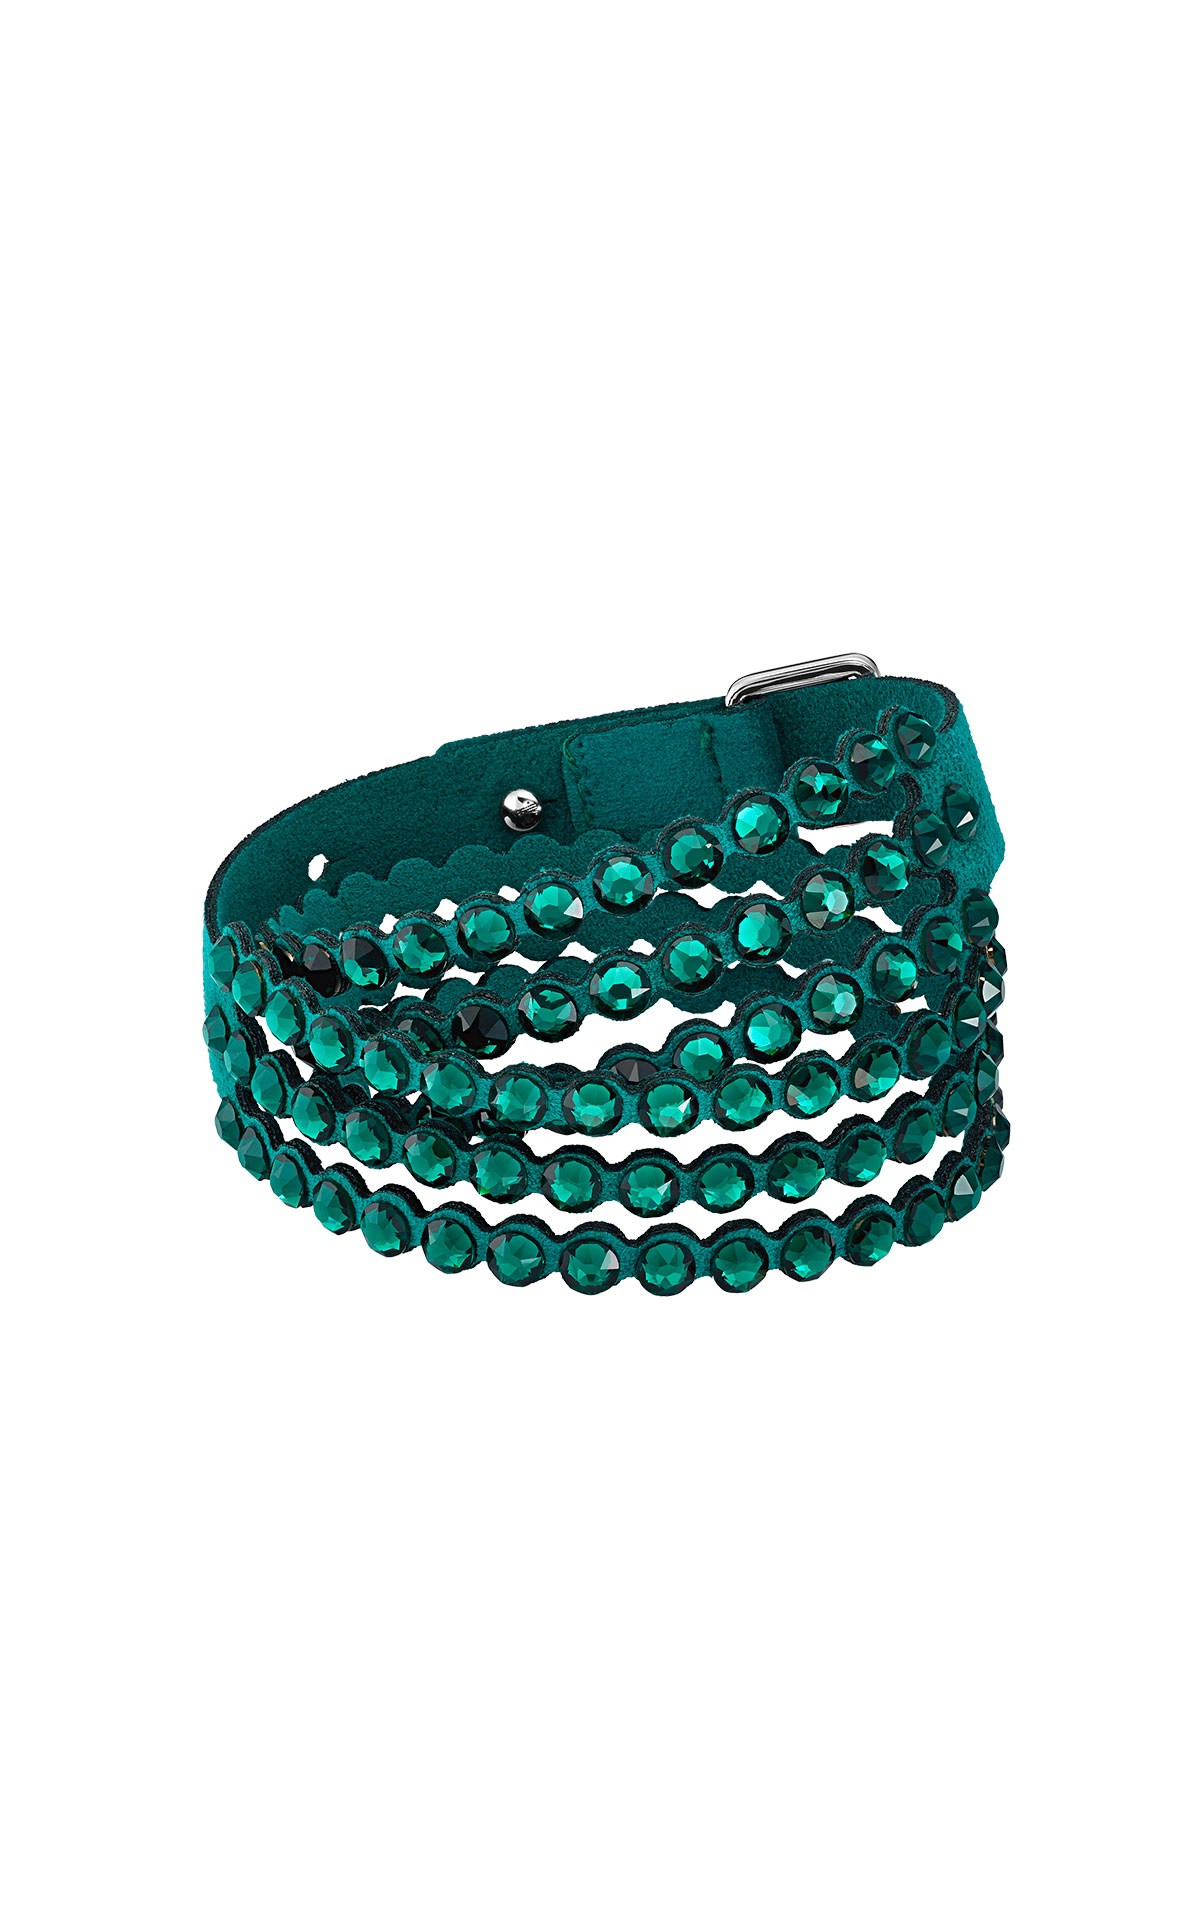 Green Swarovski bracelet